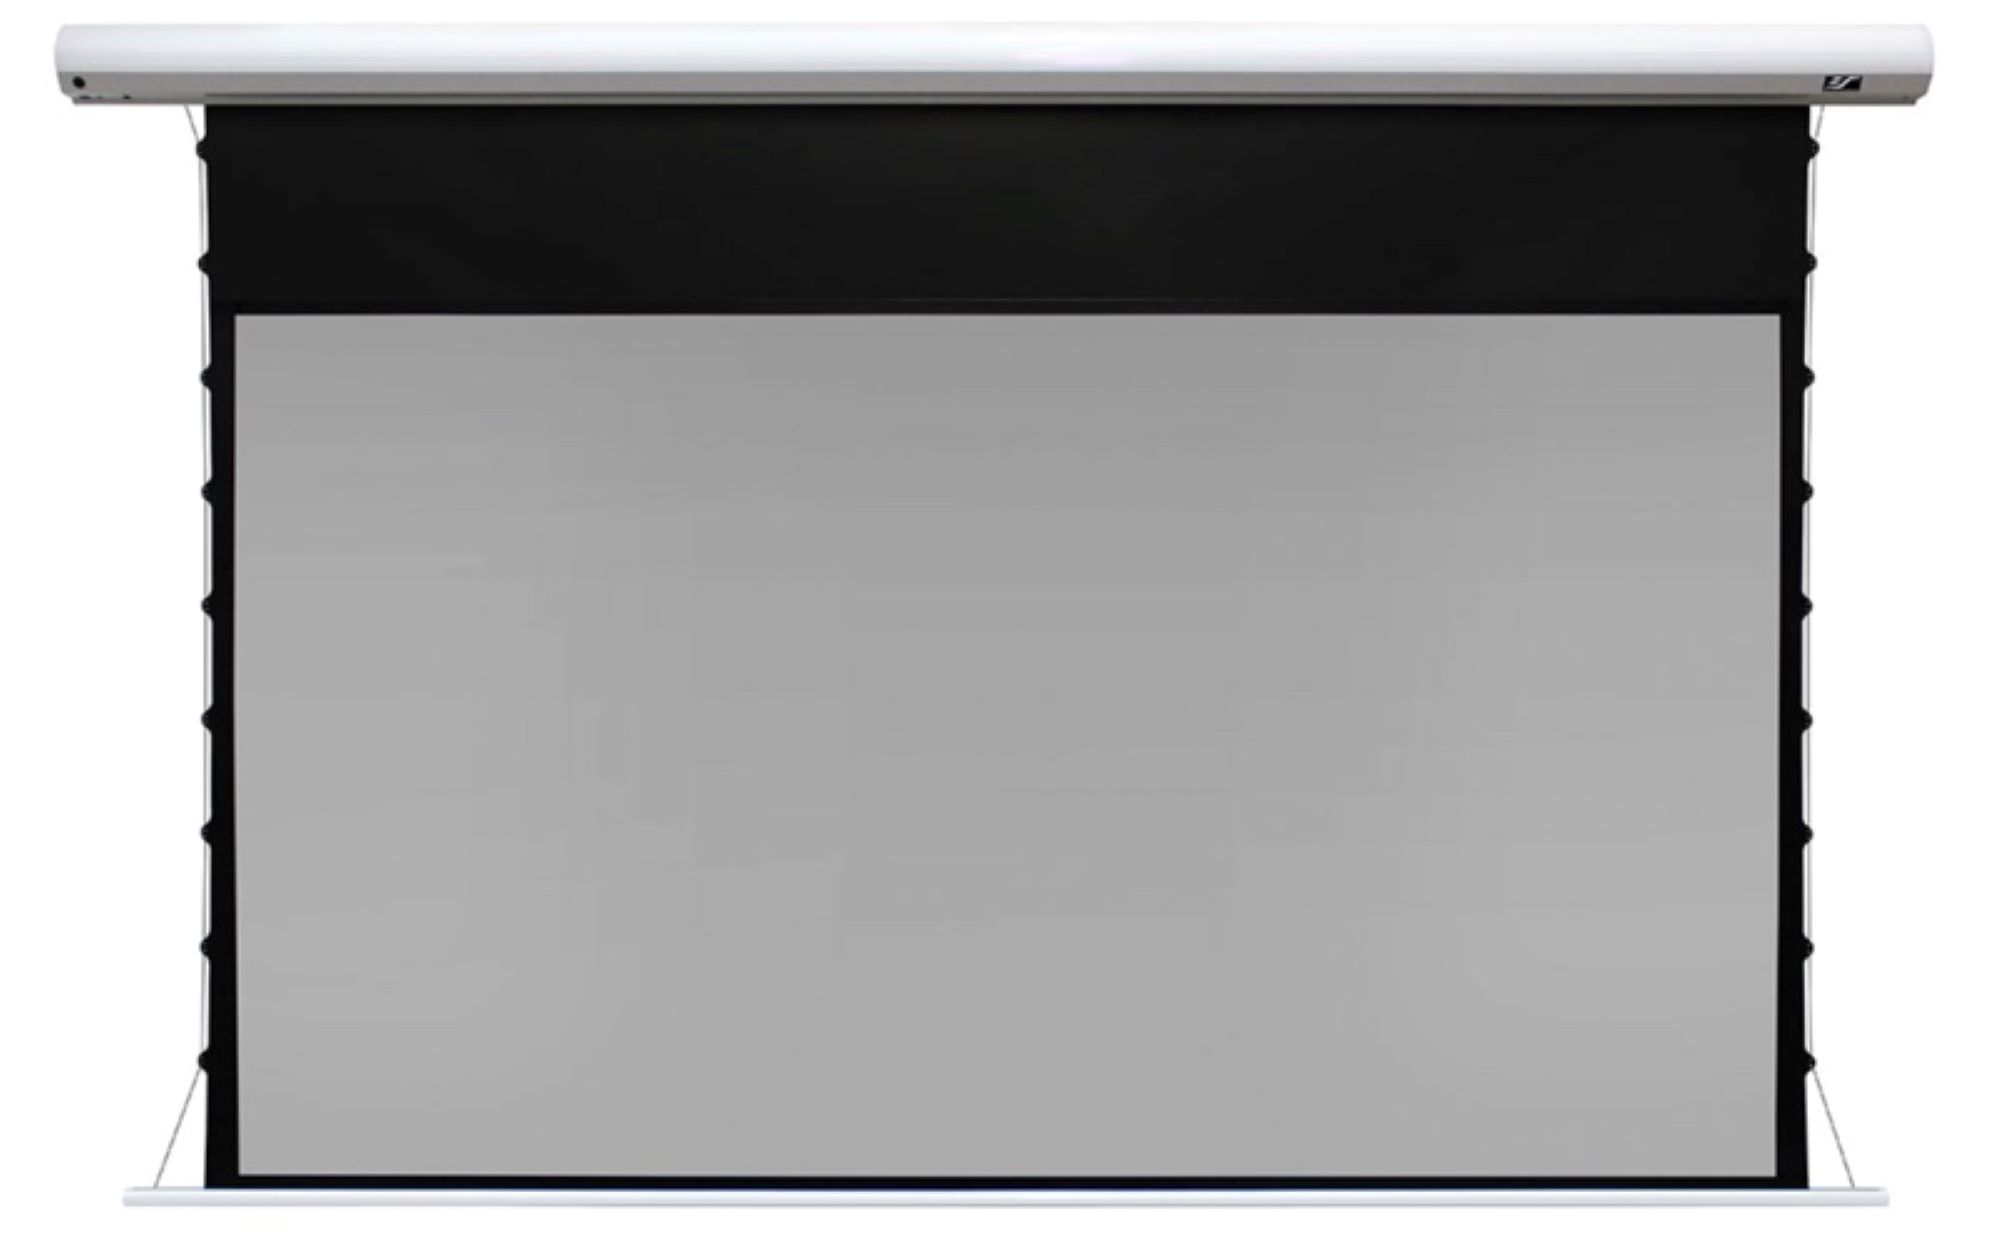 Моторизованные экраны Elite Screens SKT110XHD5-E12 натяжные экраны на раме elite screens pvr200wh1